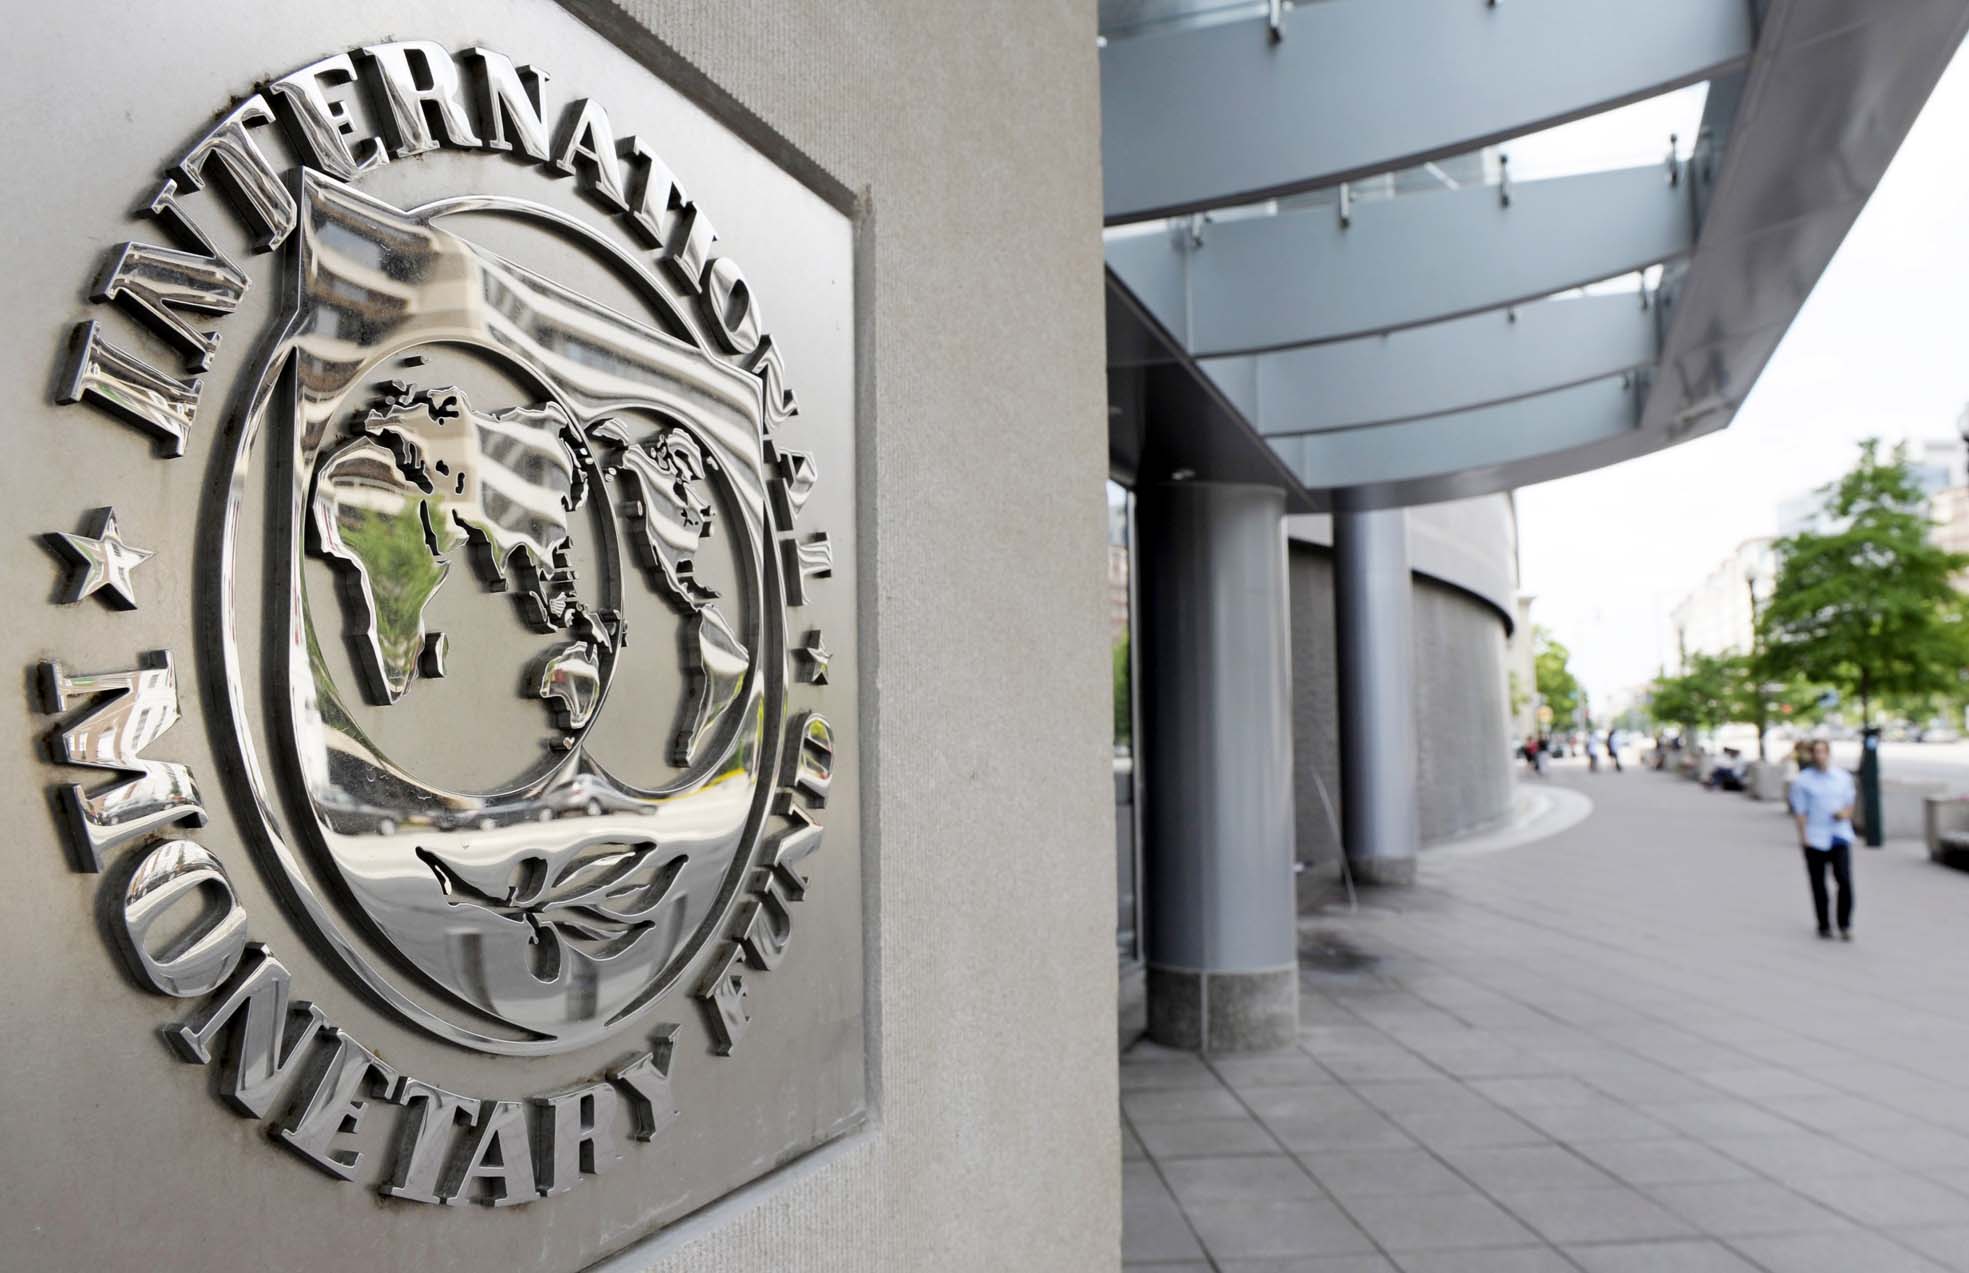 Международный валютный фонд (МВФ) готов продолжить финансирование Украины даже без договора веки о реструктуризации ее внешнего долга. 